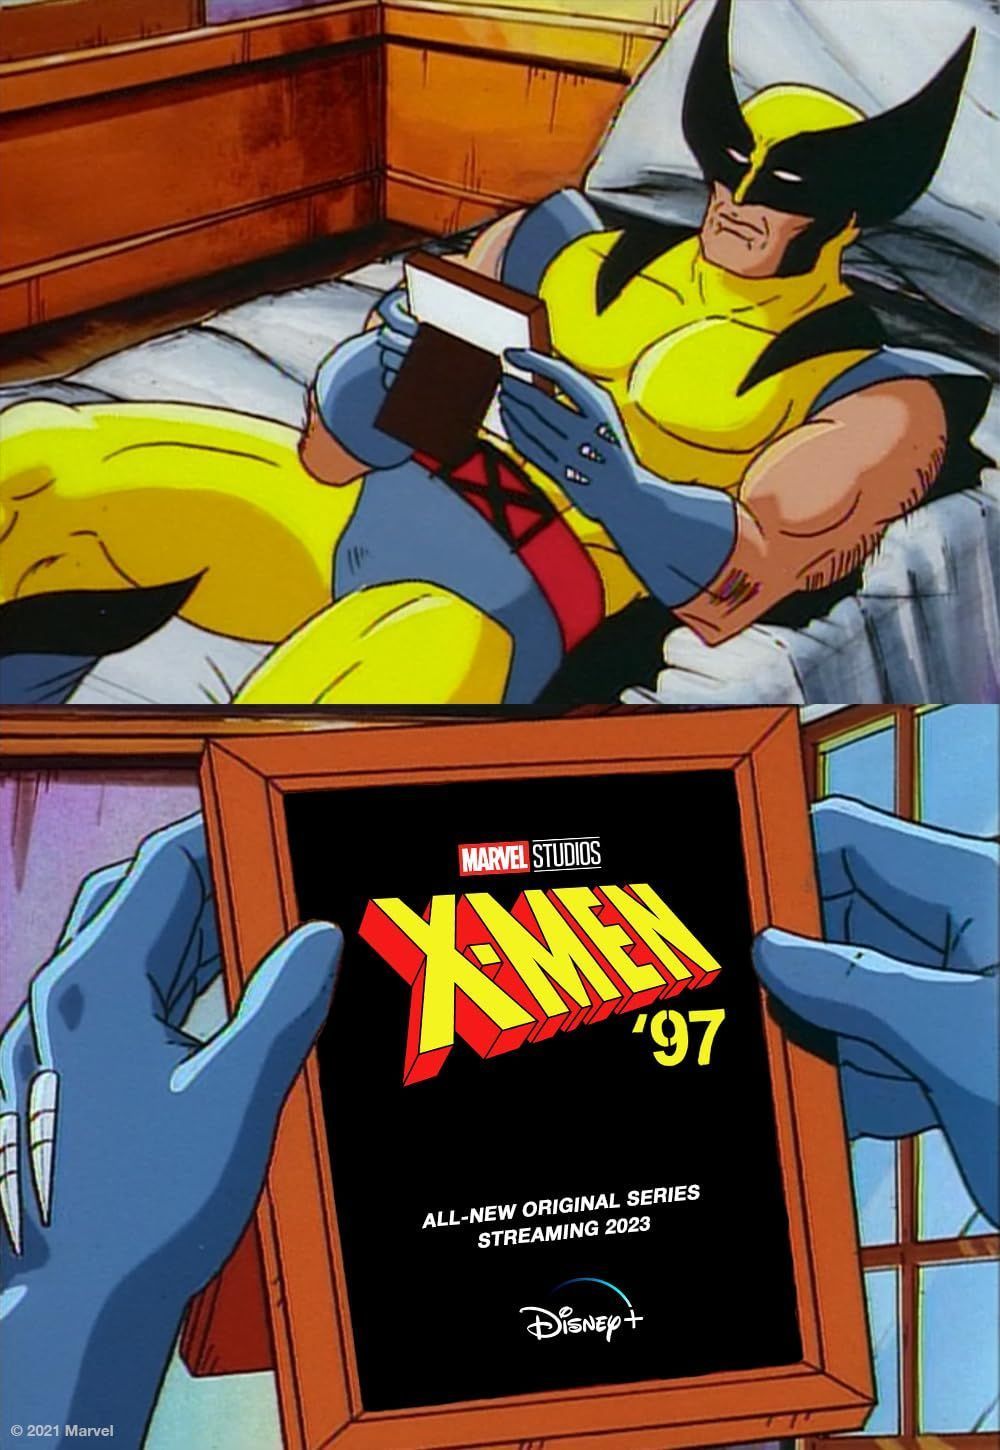 X-Men 97 (2024) Season 1 English (Episode 04) TV Series download full movie